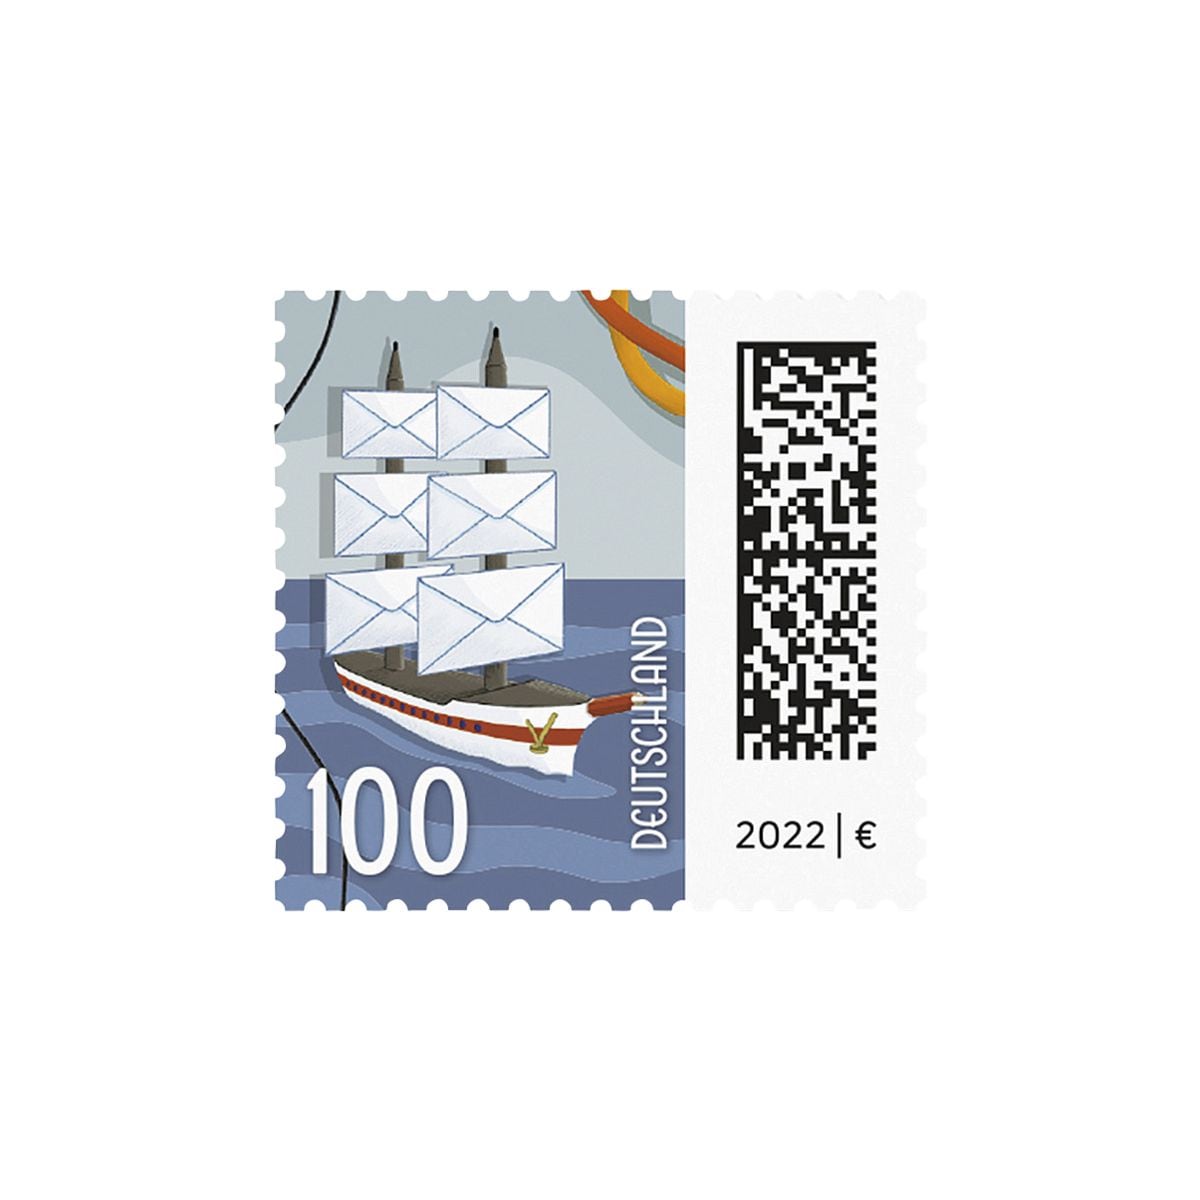 1,00 € Markenset Briefsegler Deutsche Post, 10x Briefmarke selbstklebend